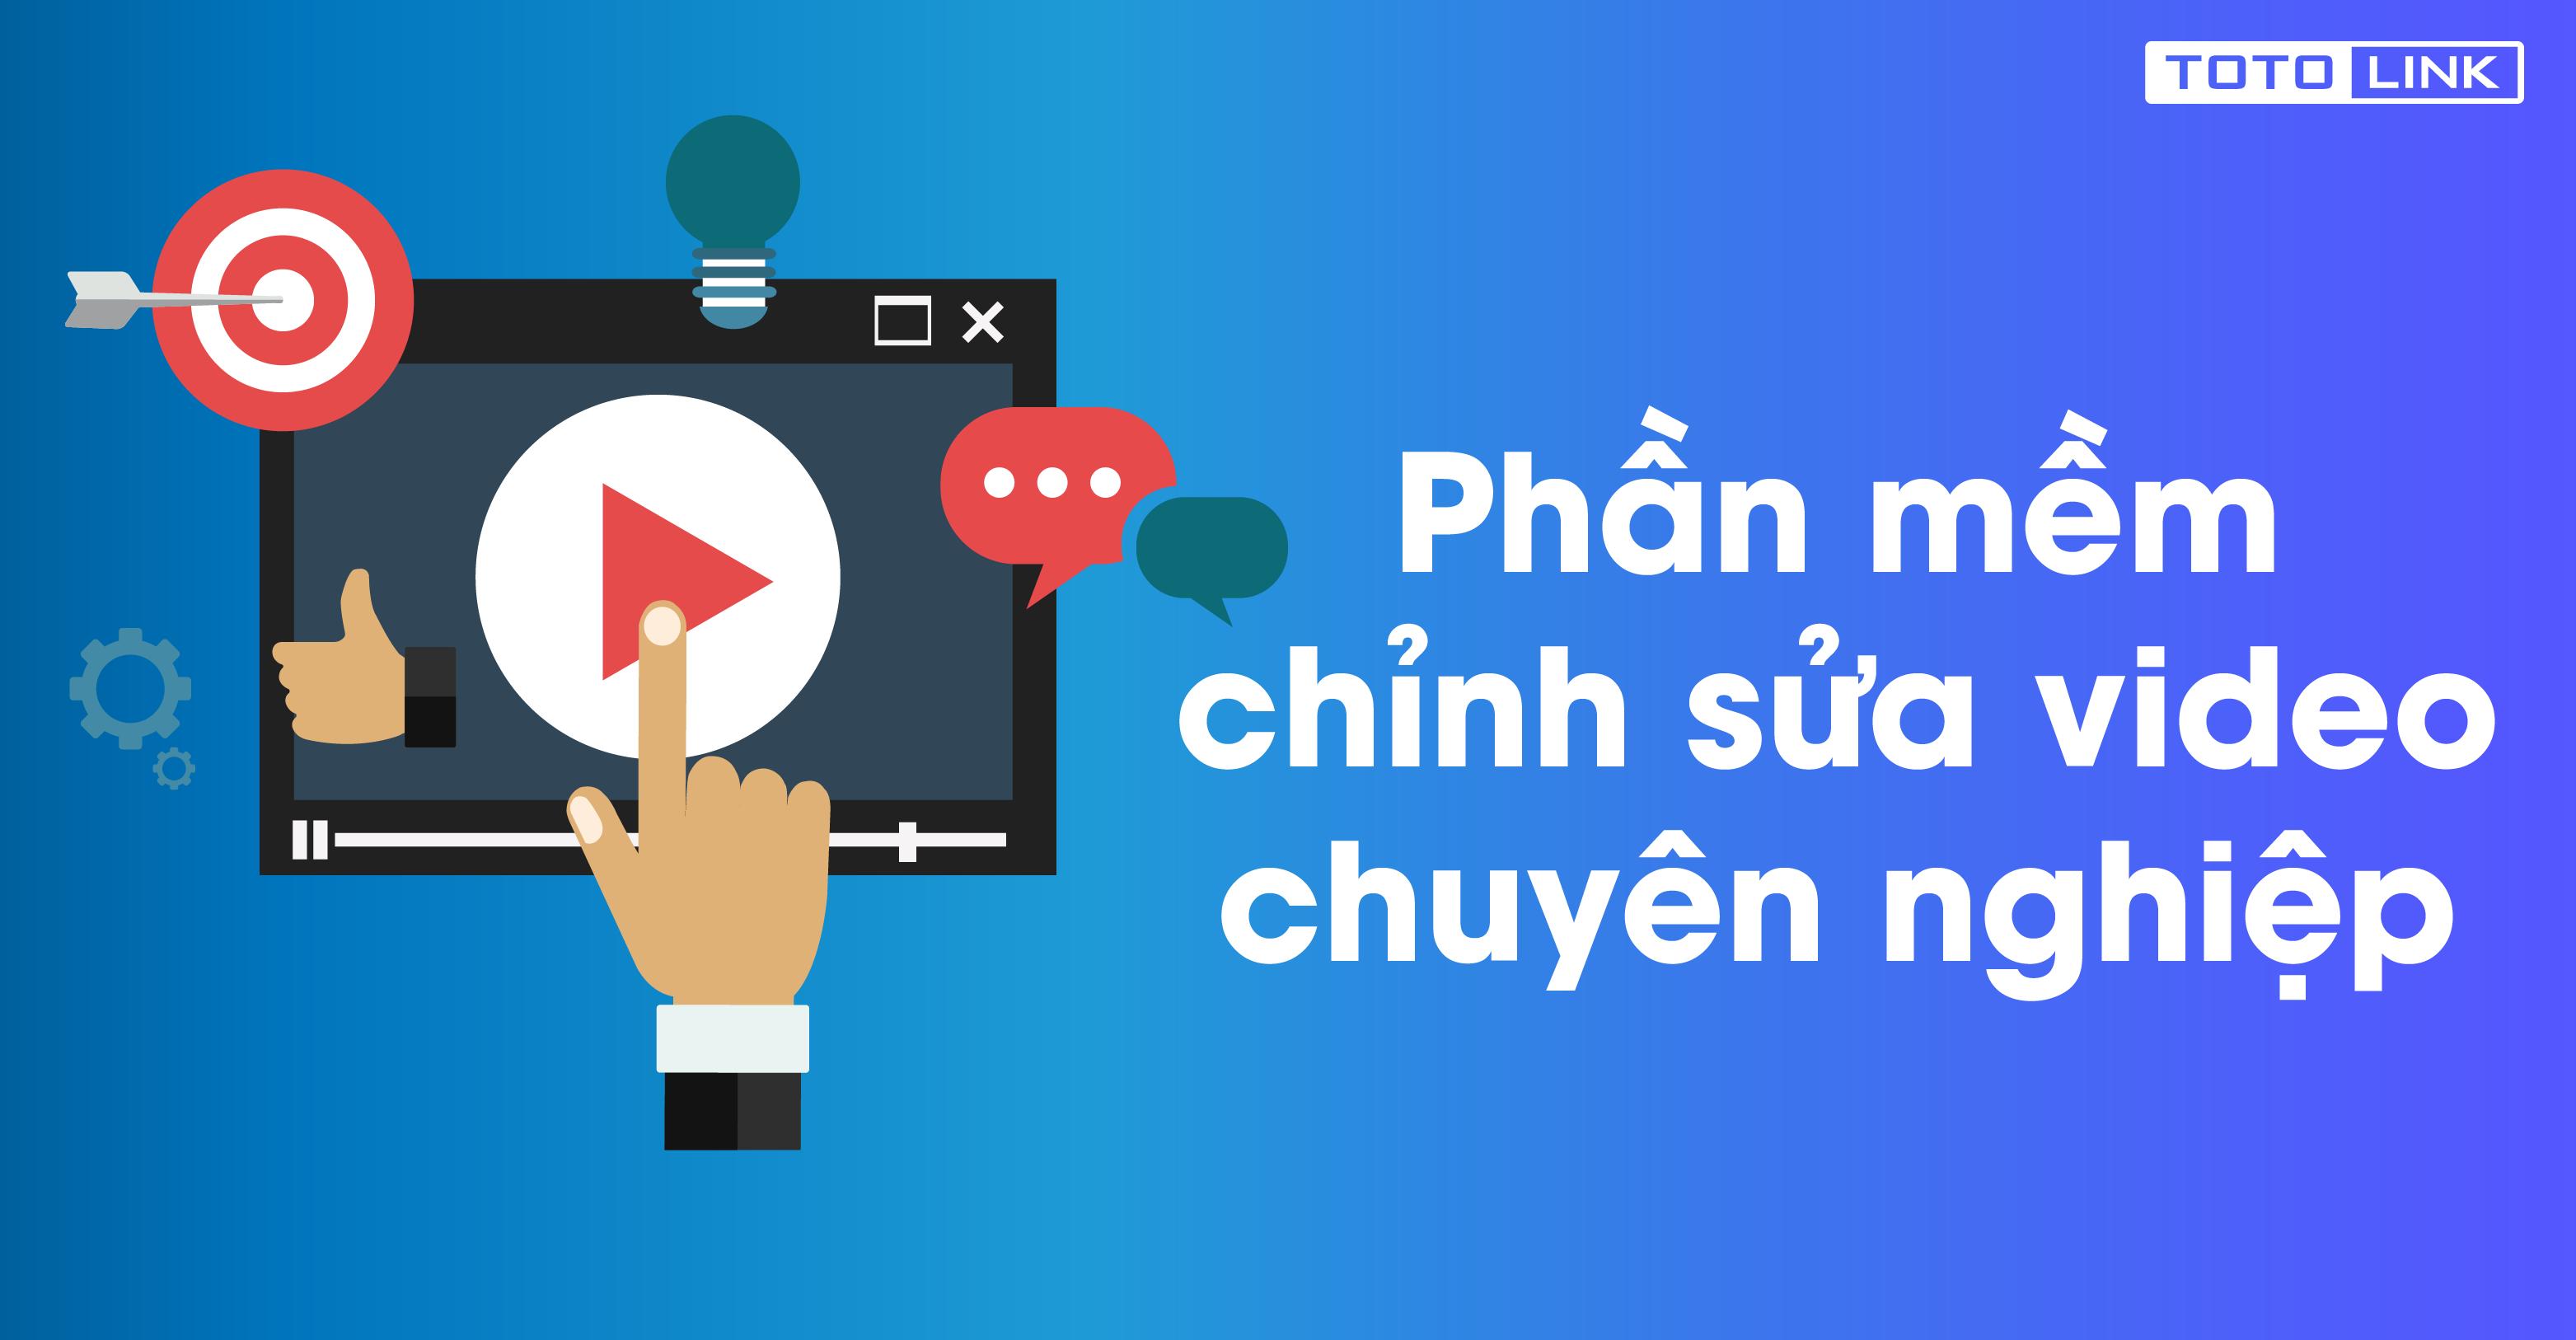 Top 10 phần mềm chỉnh sửa video chuyên nghiệp, bạn có biết? - TOTOLINK Việt Nam